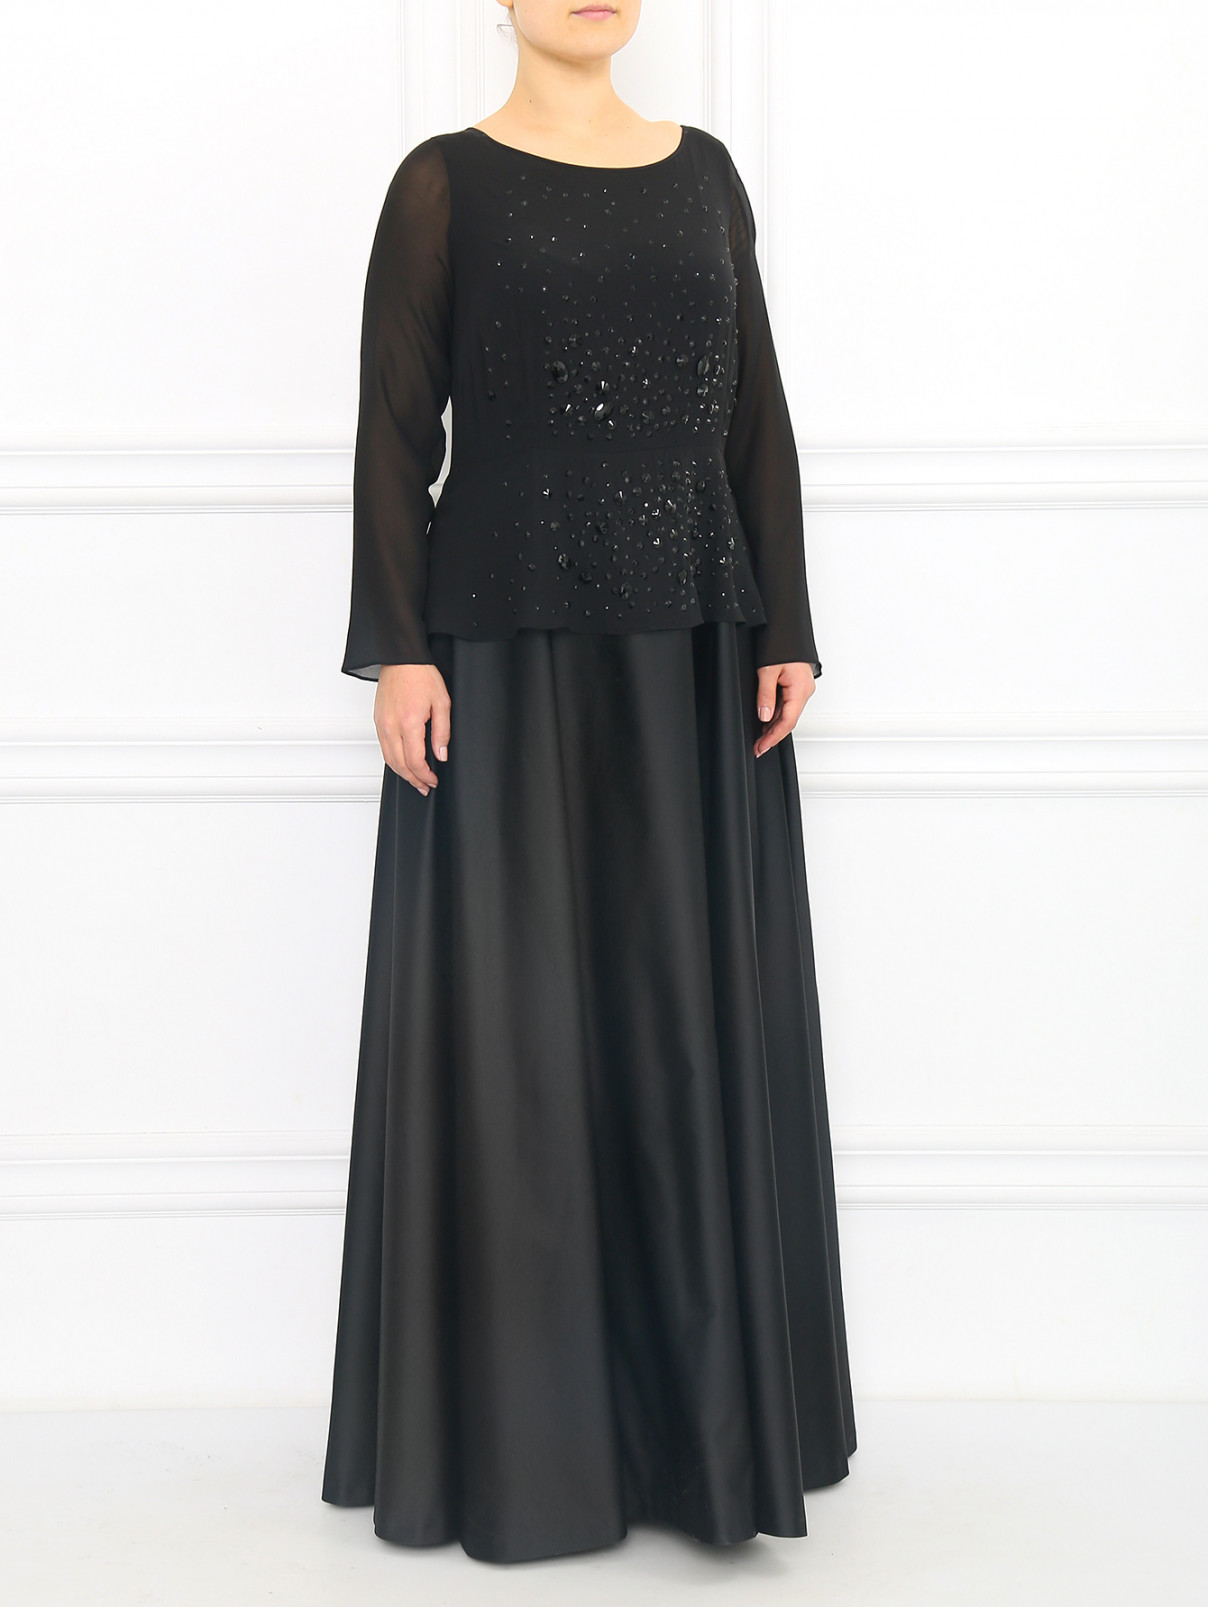 Платье-макси декорированное камнями Marina Rinaldi  –  Модель Общий вид  – Цвет:  Черный